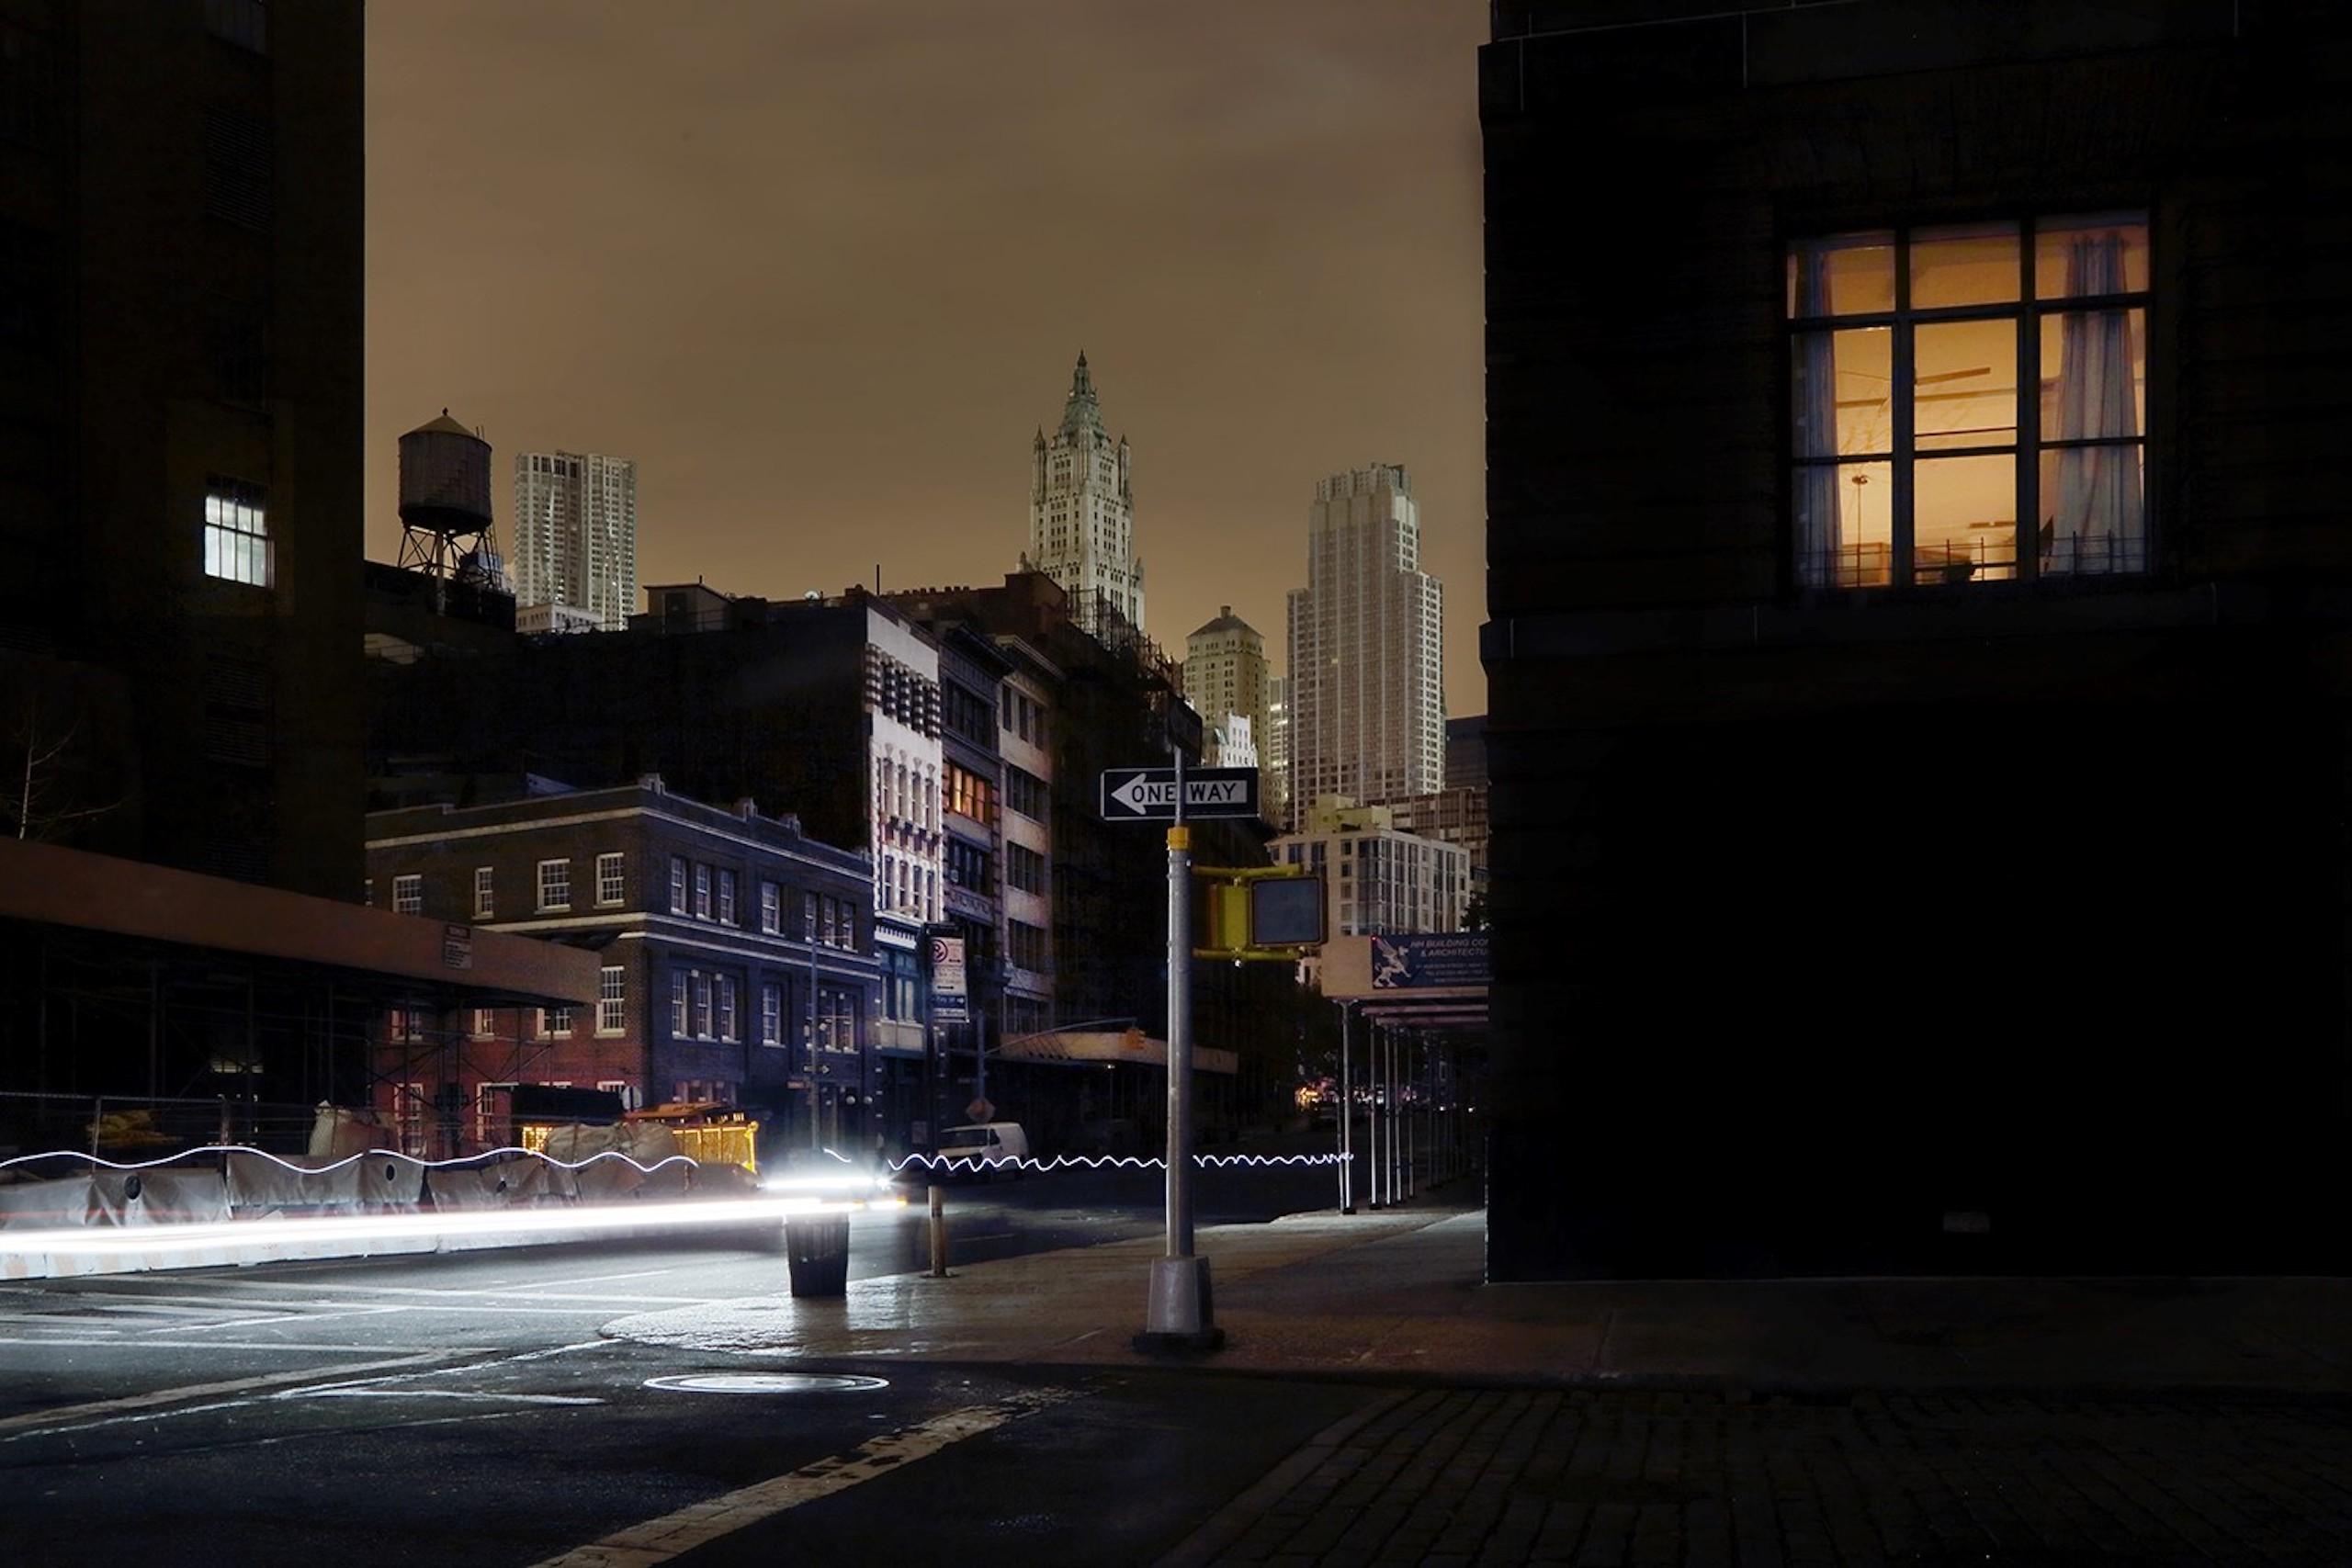 Flashlights ist eine limitierte Auflage der Fotografie des zeitgenössischen Künstlers Christophe Jacrot. Sie ist Teil der Reihe "New York in Schwarz".
 
Dieses Foto wird nur als ungerahmter Abzug verkauft. Sie ist in 2 Größen erhältlich:
*70 cm ×